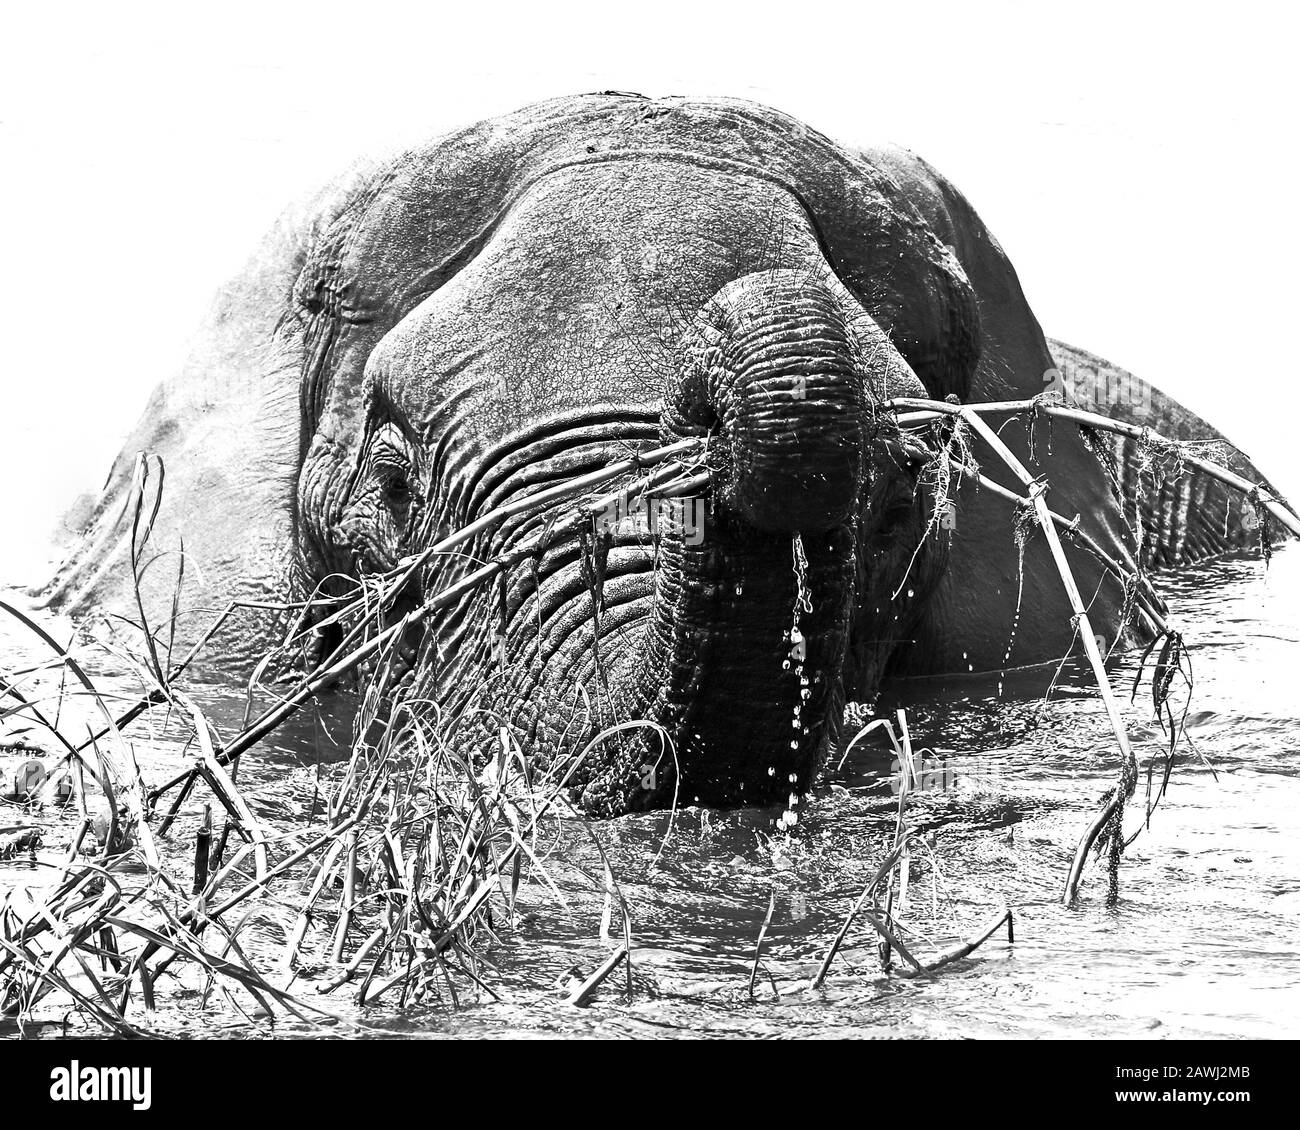 Elephants in Mana Pools, Zimbabwe Stock Photo